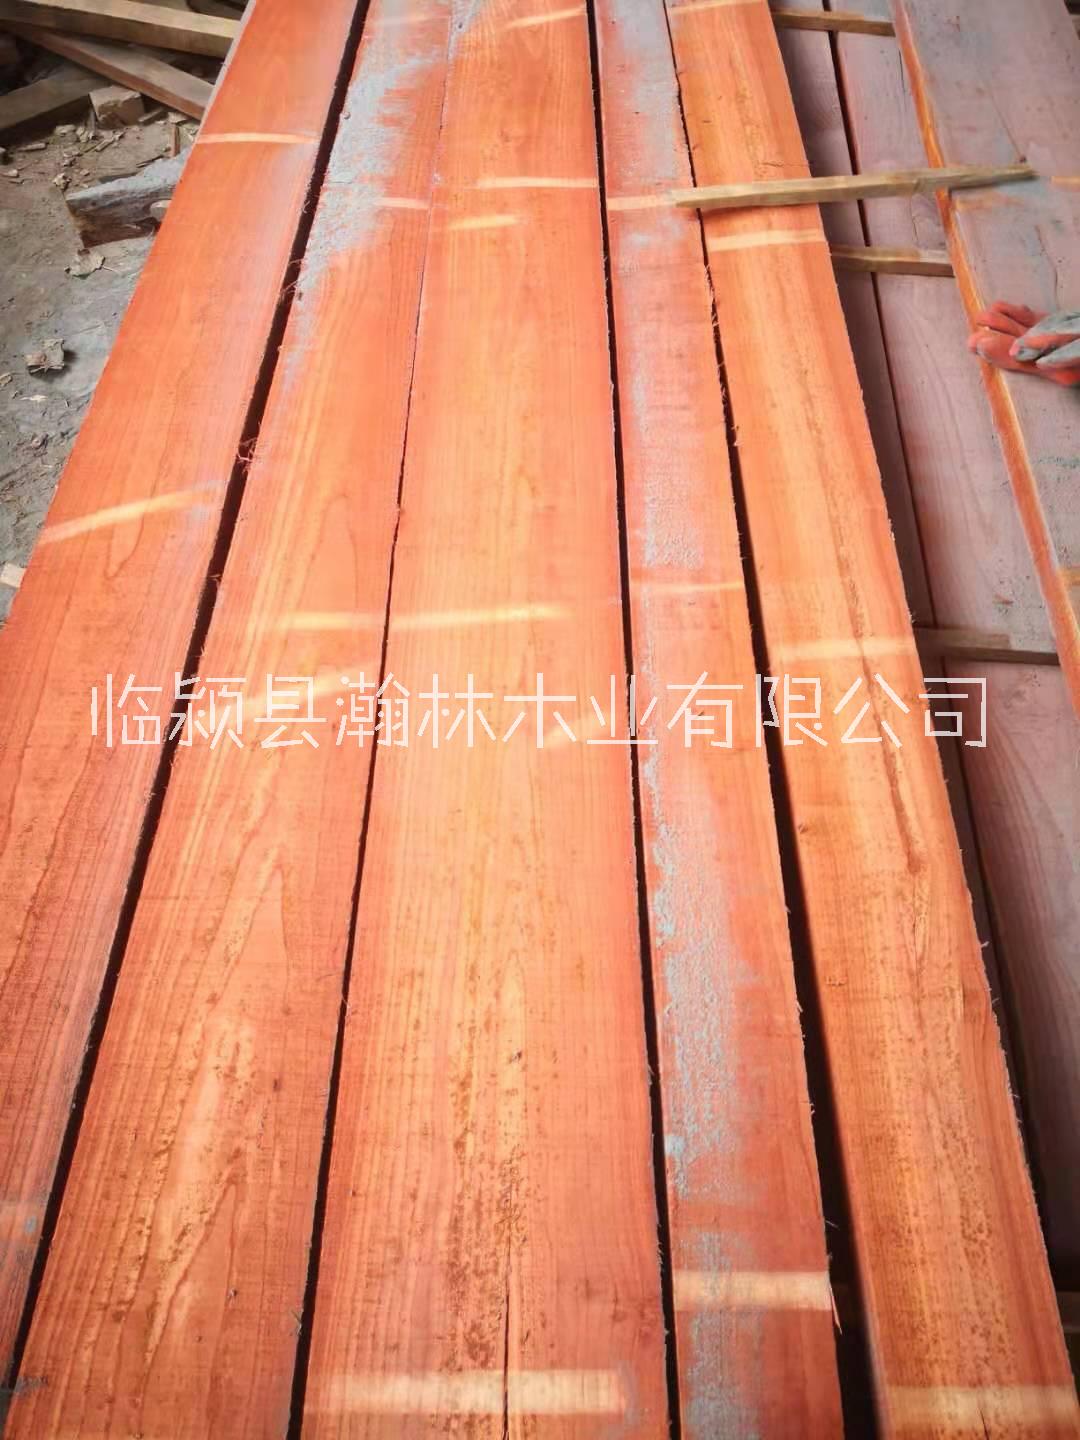 实木红椿木板材 蒸汽烘干热板材 压定型红椿木 实木家具材料 蒸汽烘干热红椿木板材图片